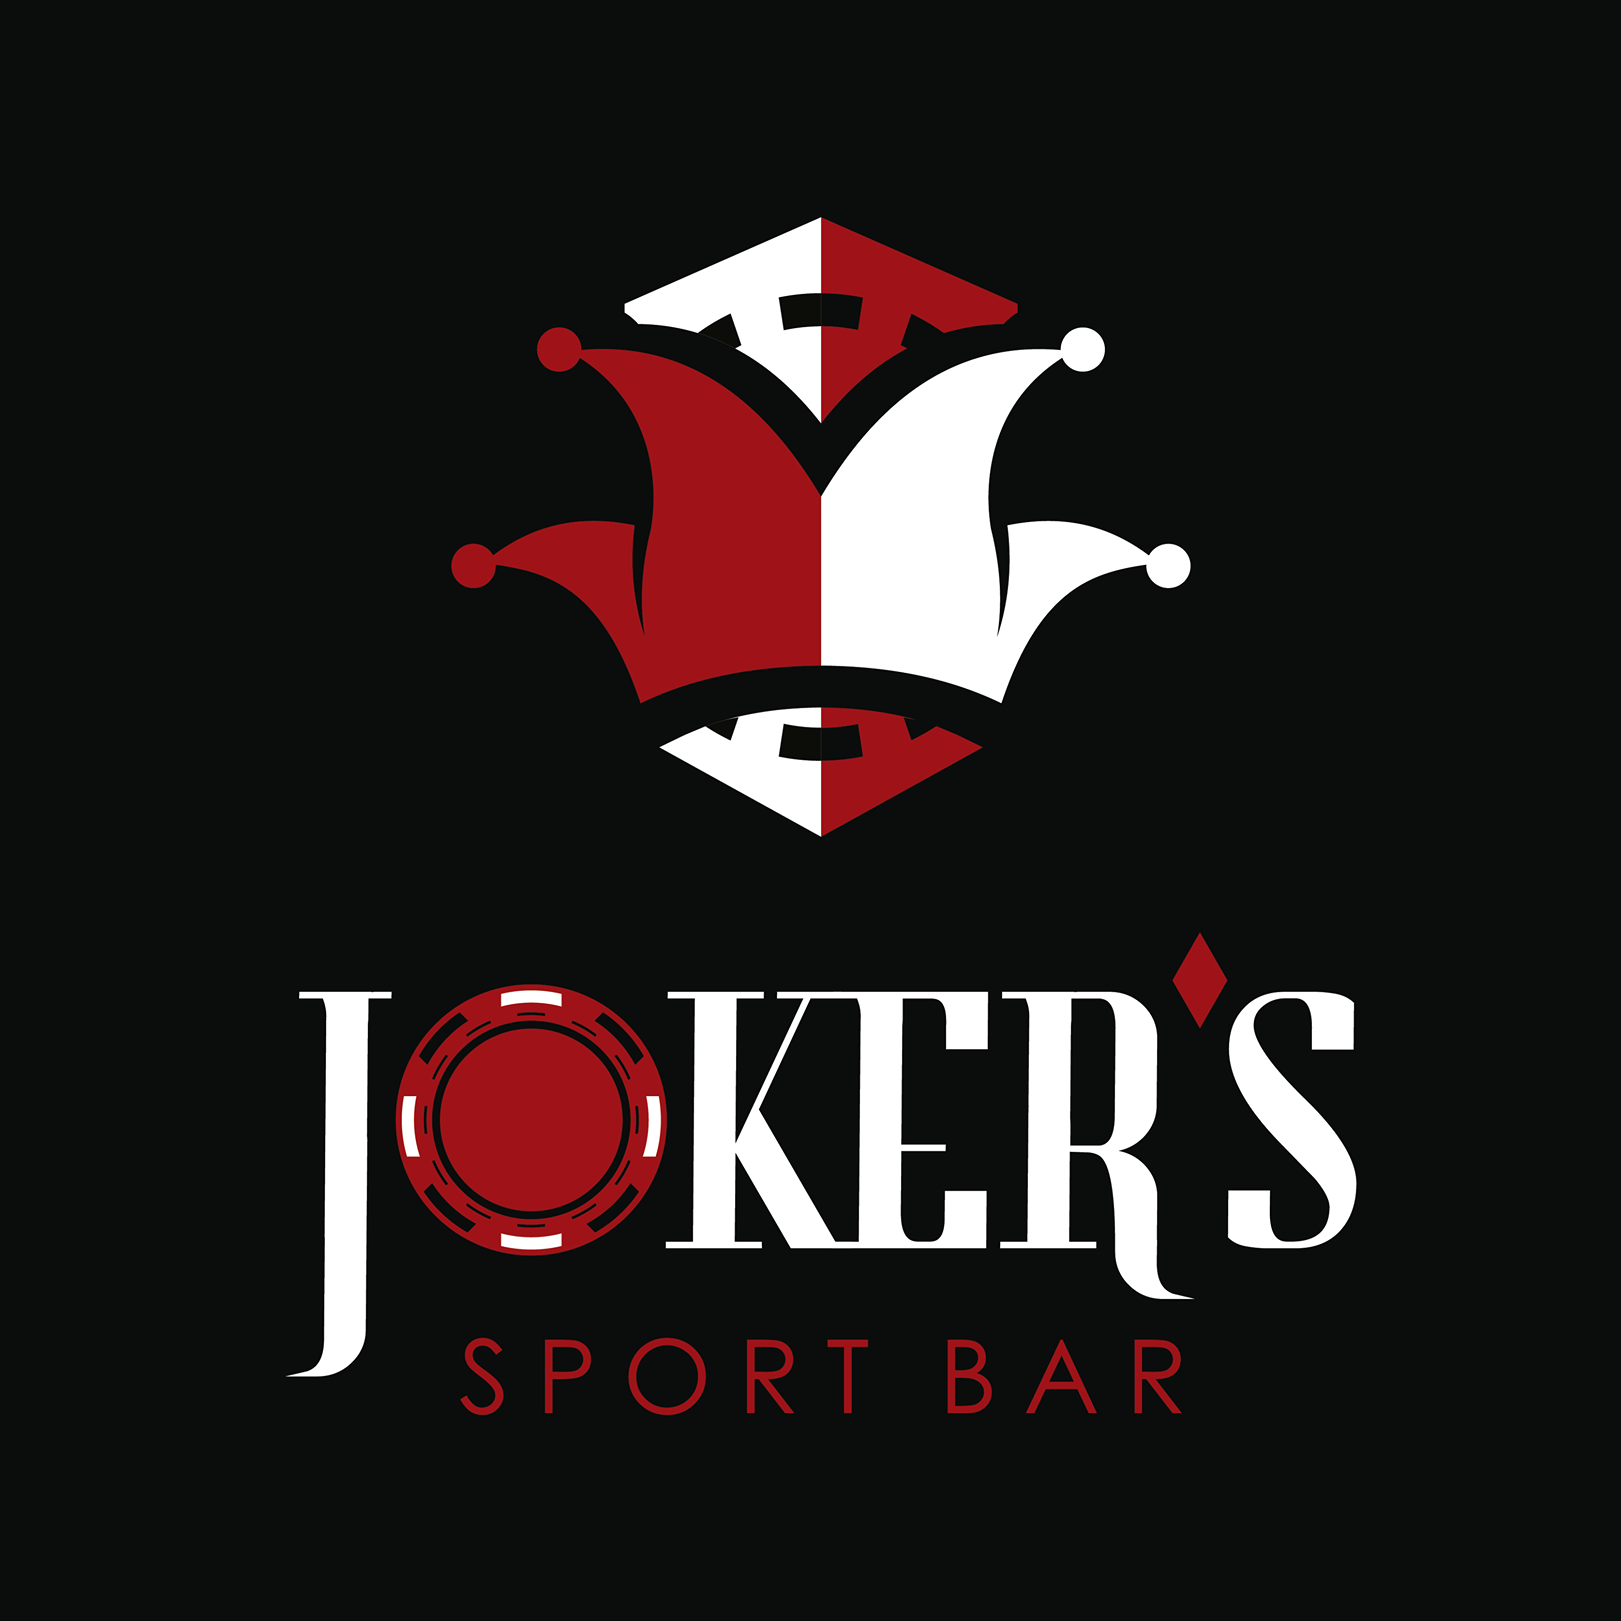 Joker's Sport Bar